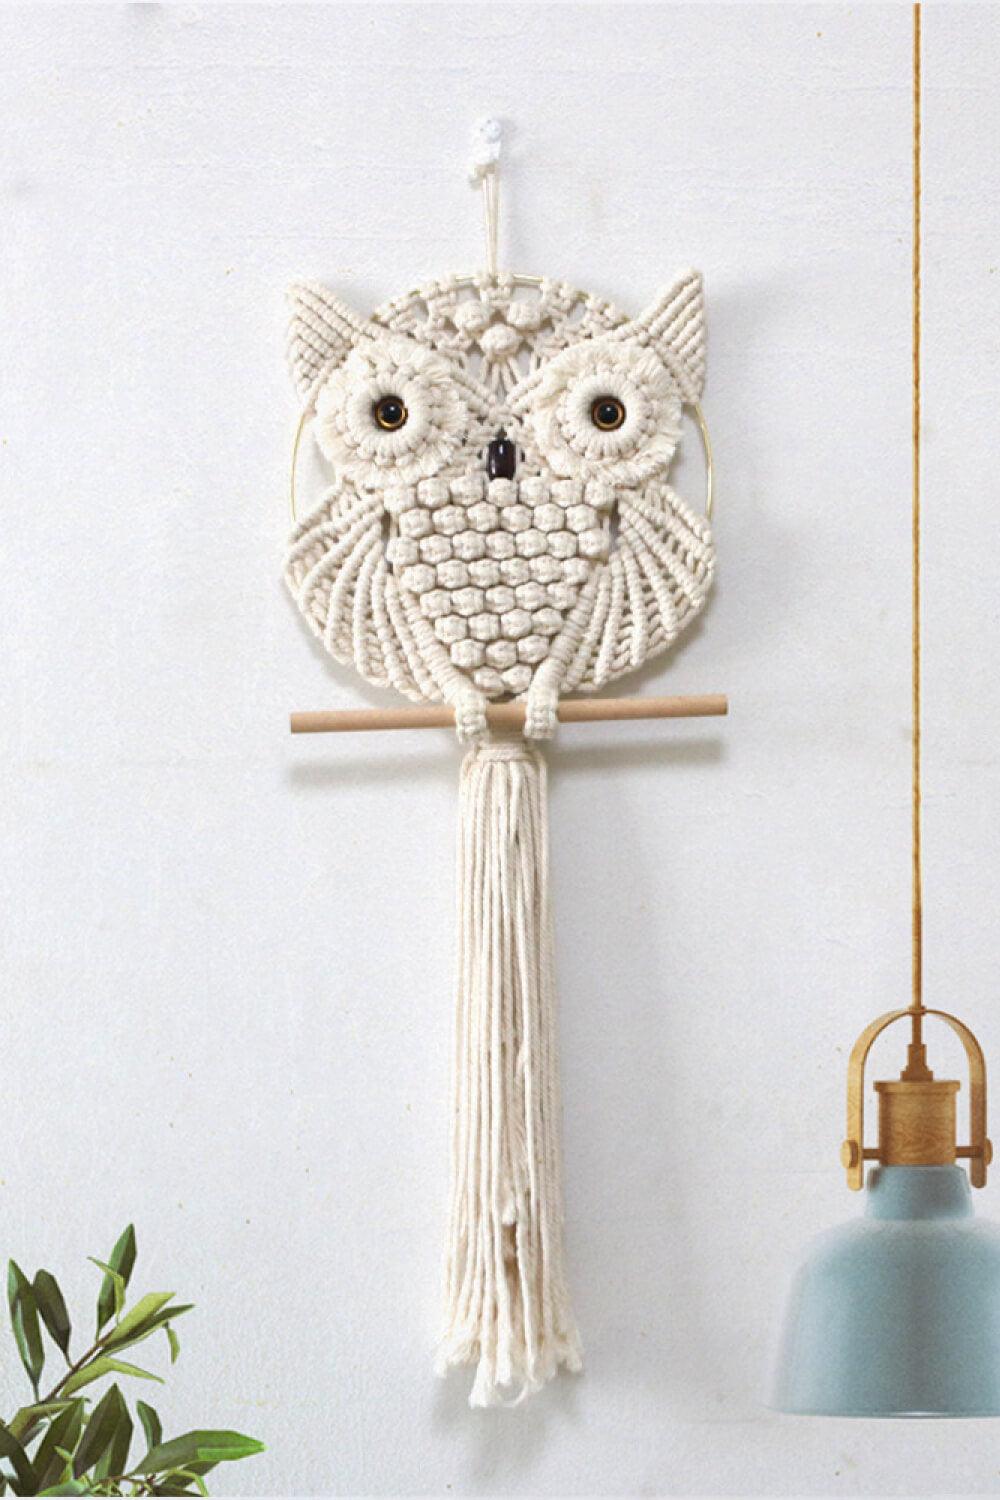 Hand-Woven Owl Macrame Wall Hanging - Flyclothing LLC